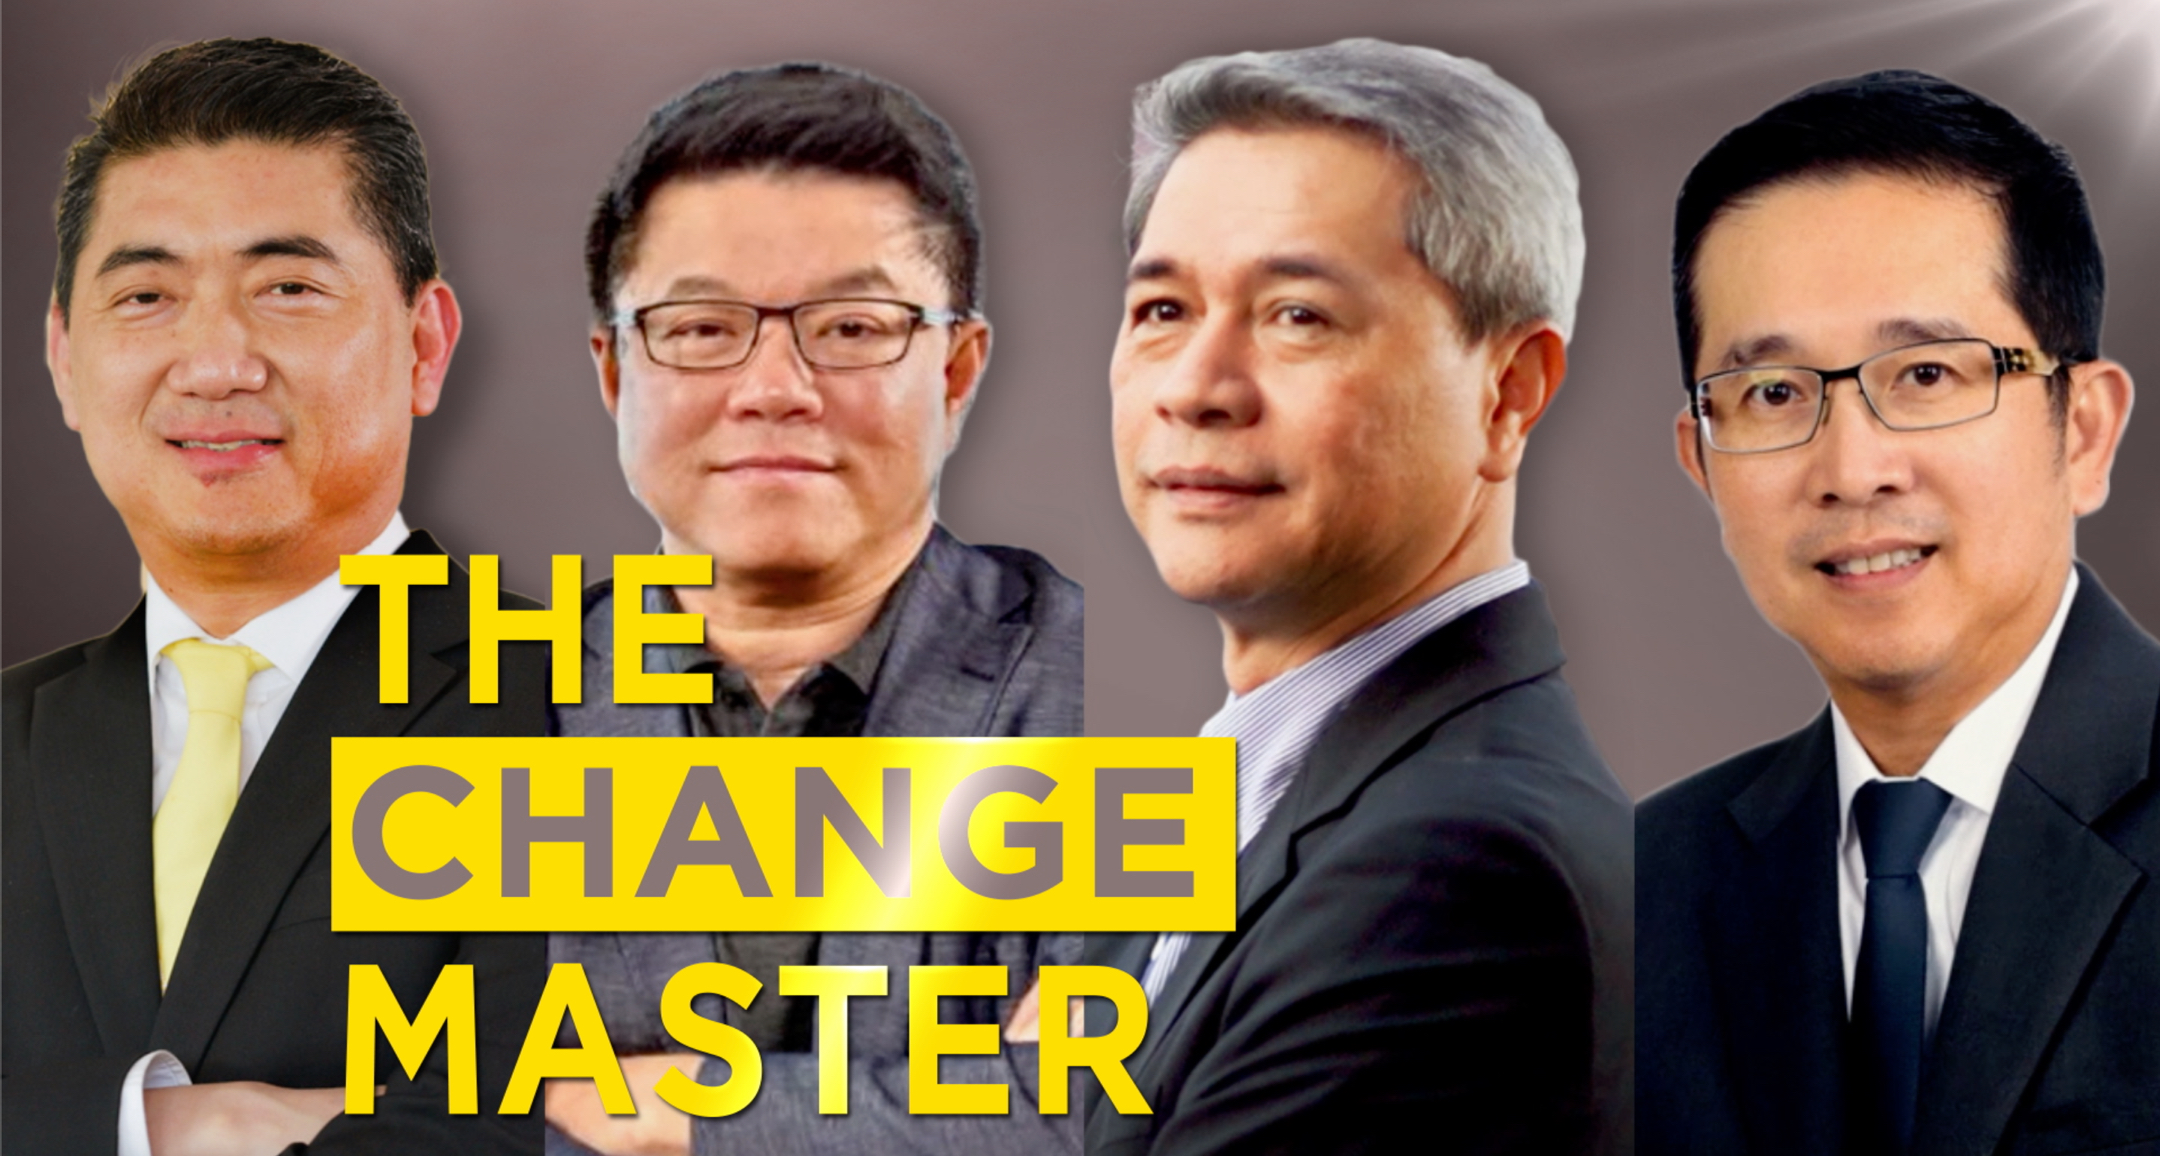 กรุงศรี จับมือ 4 ซีอีโอ  แบ่งปันมุมมองการทำธุรกิจยุคใหม่ ผ่านโปรเจค “THE CHANGE MASTER”